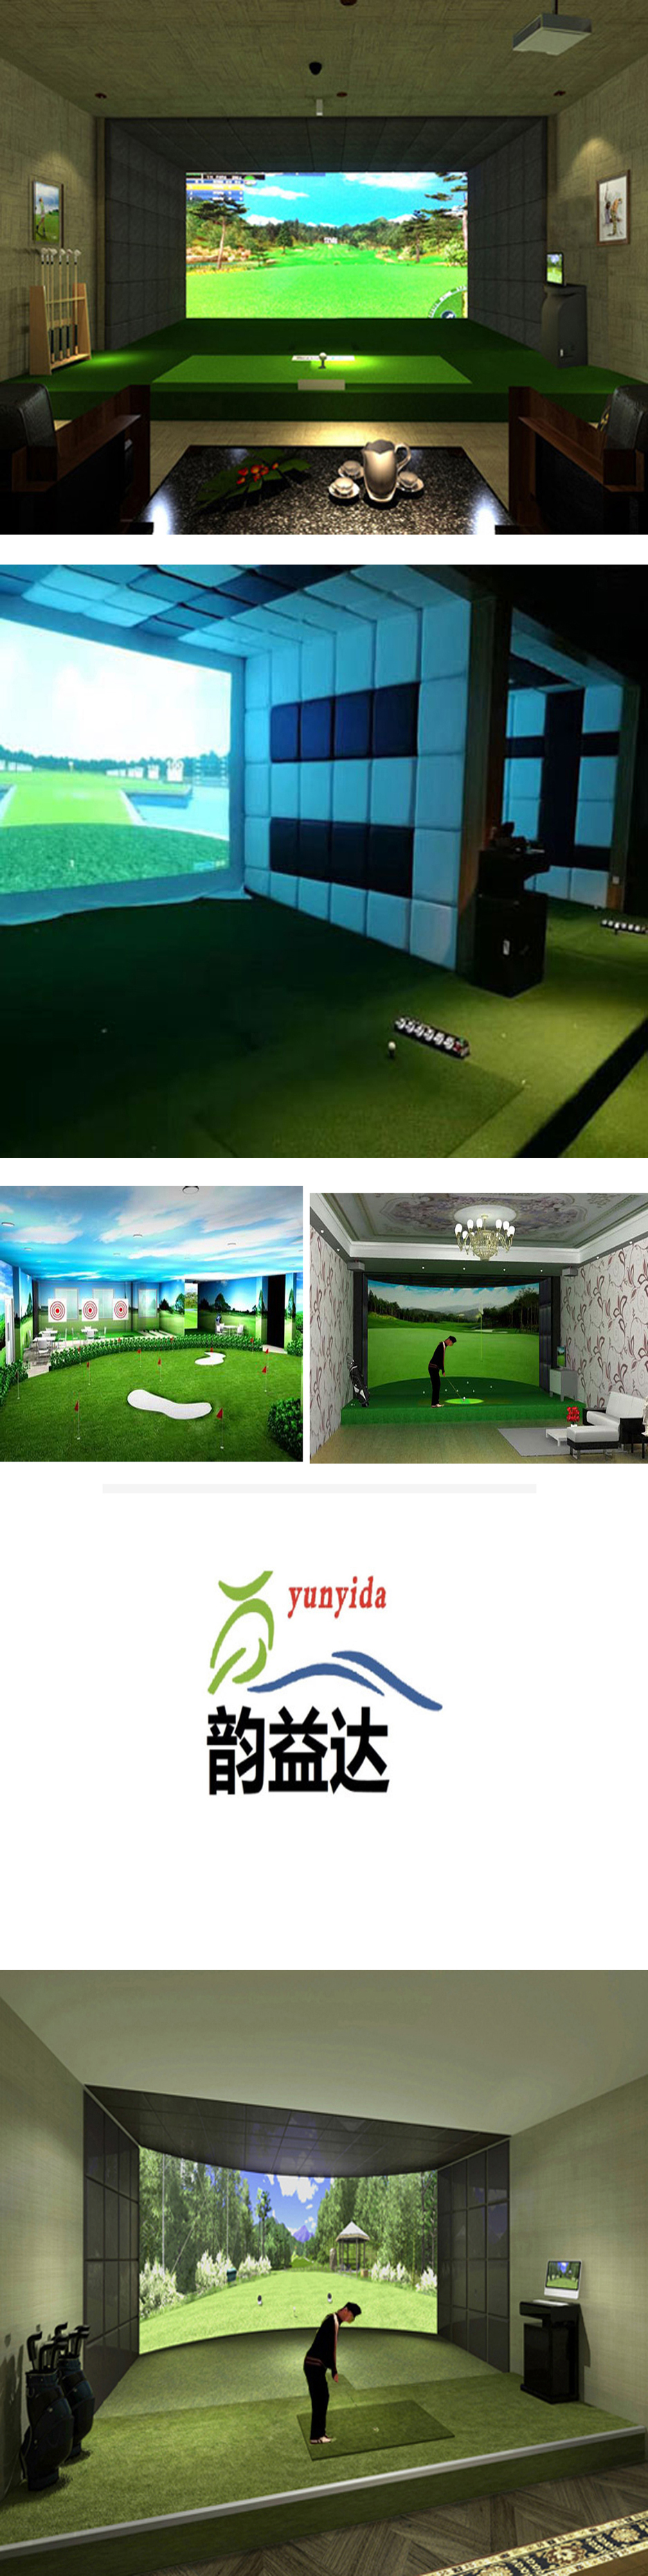 模拟室内高尔夫练习场 2.jpg